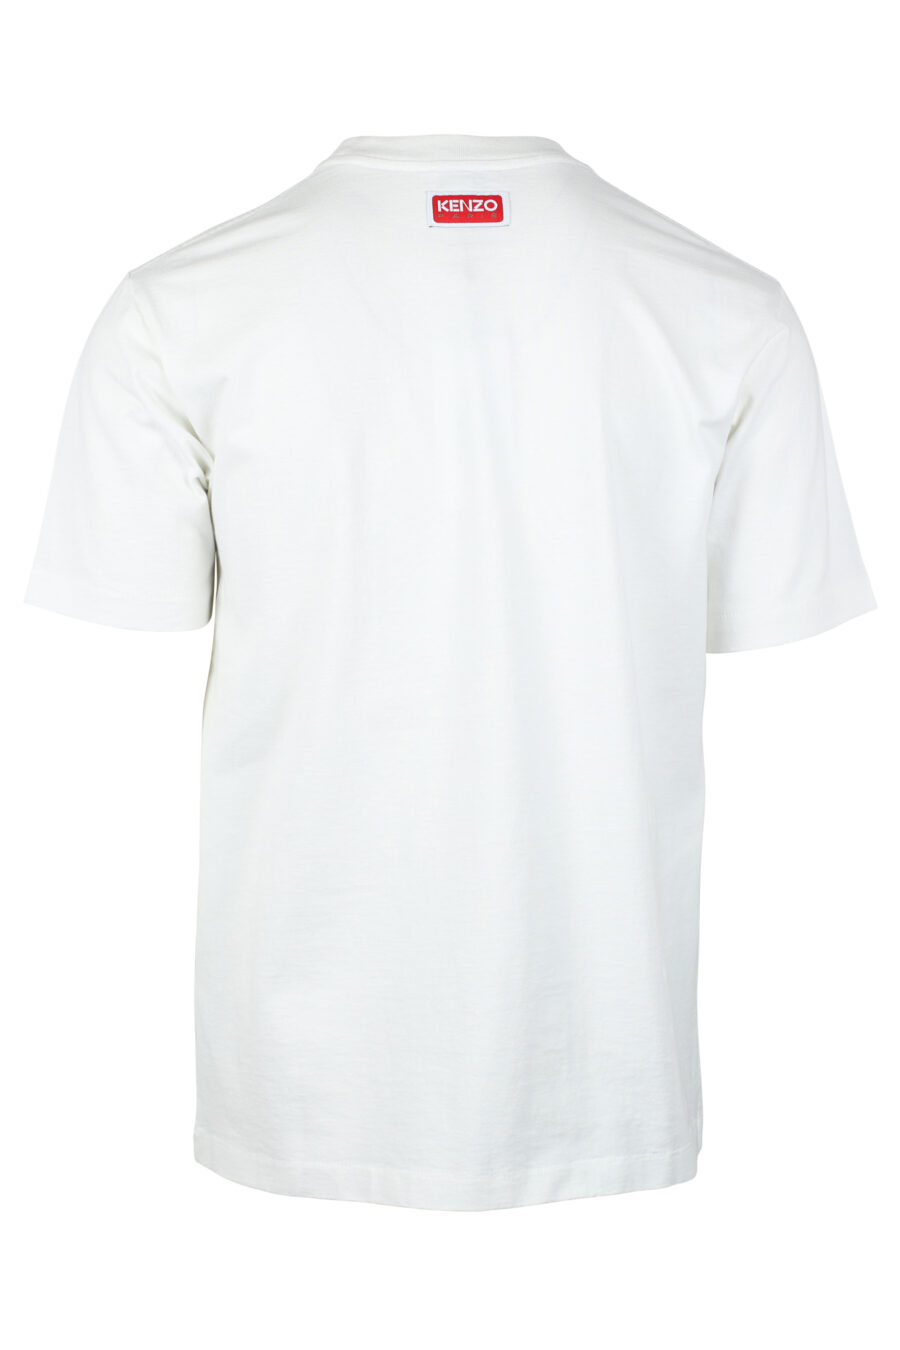 Weißes T-Shirt mit lila "K" Maxilogo - IMG 4682